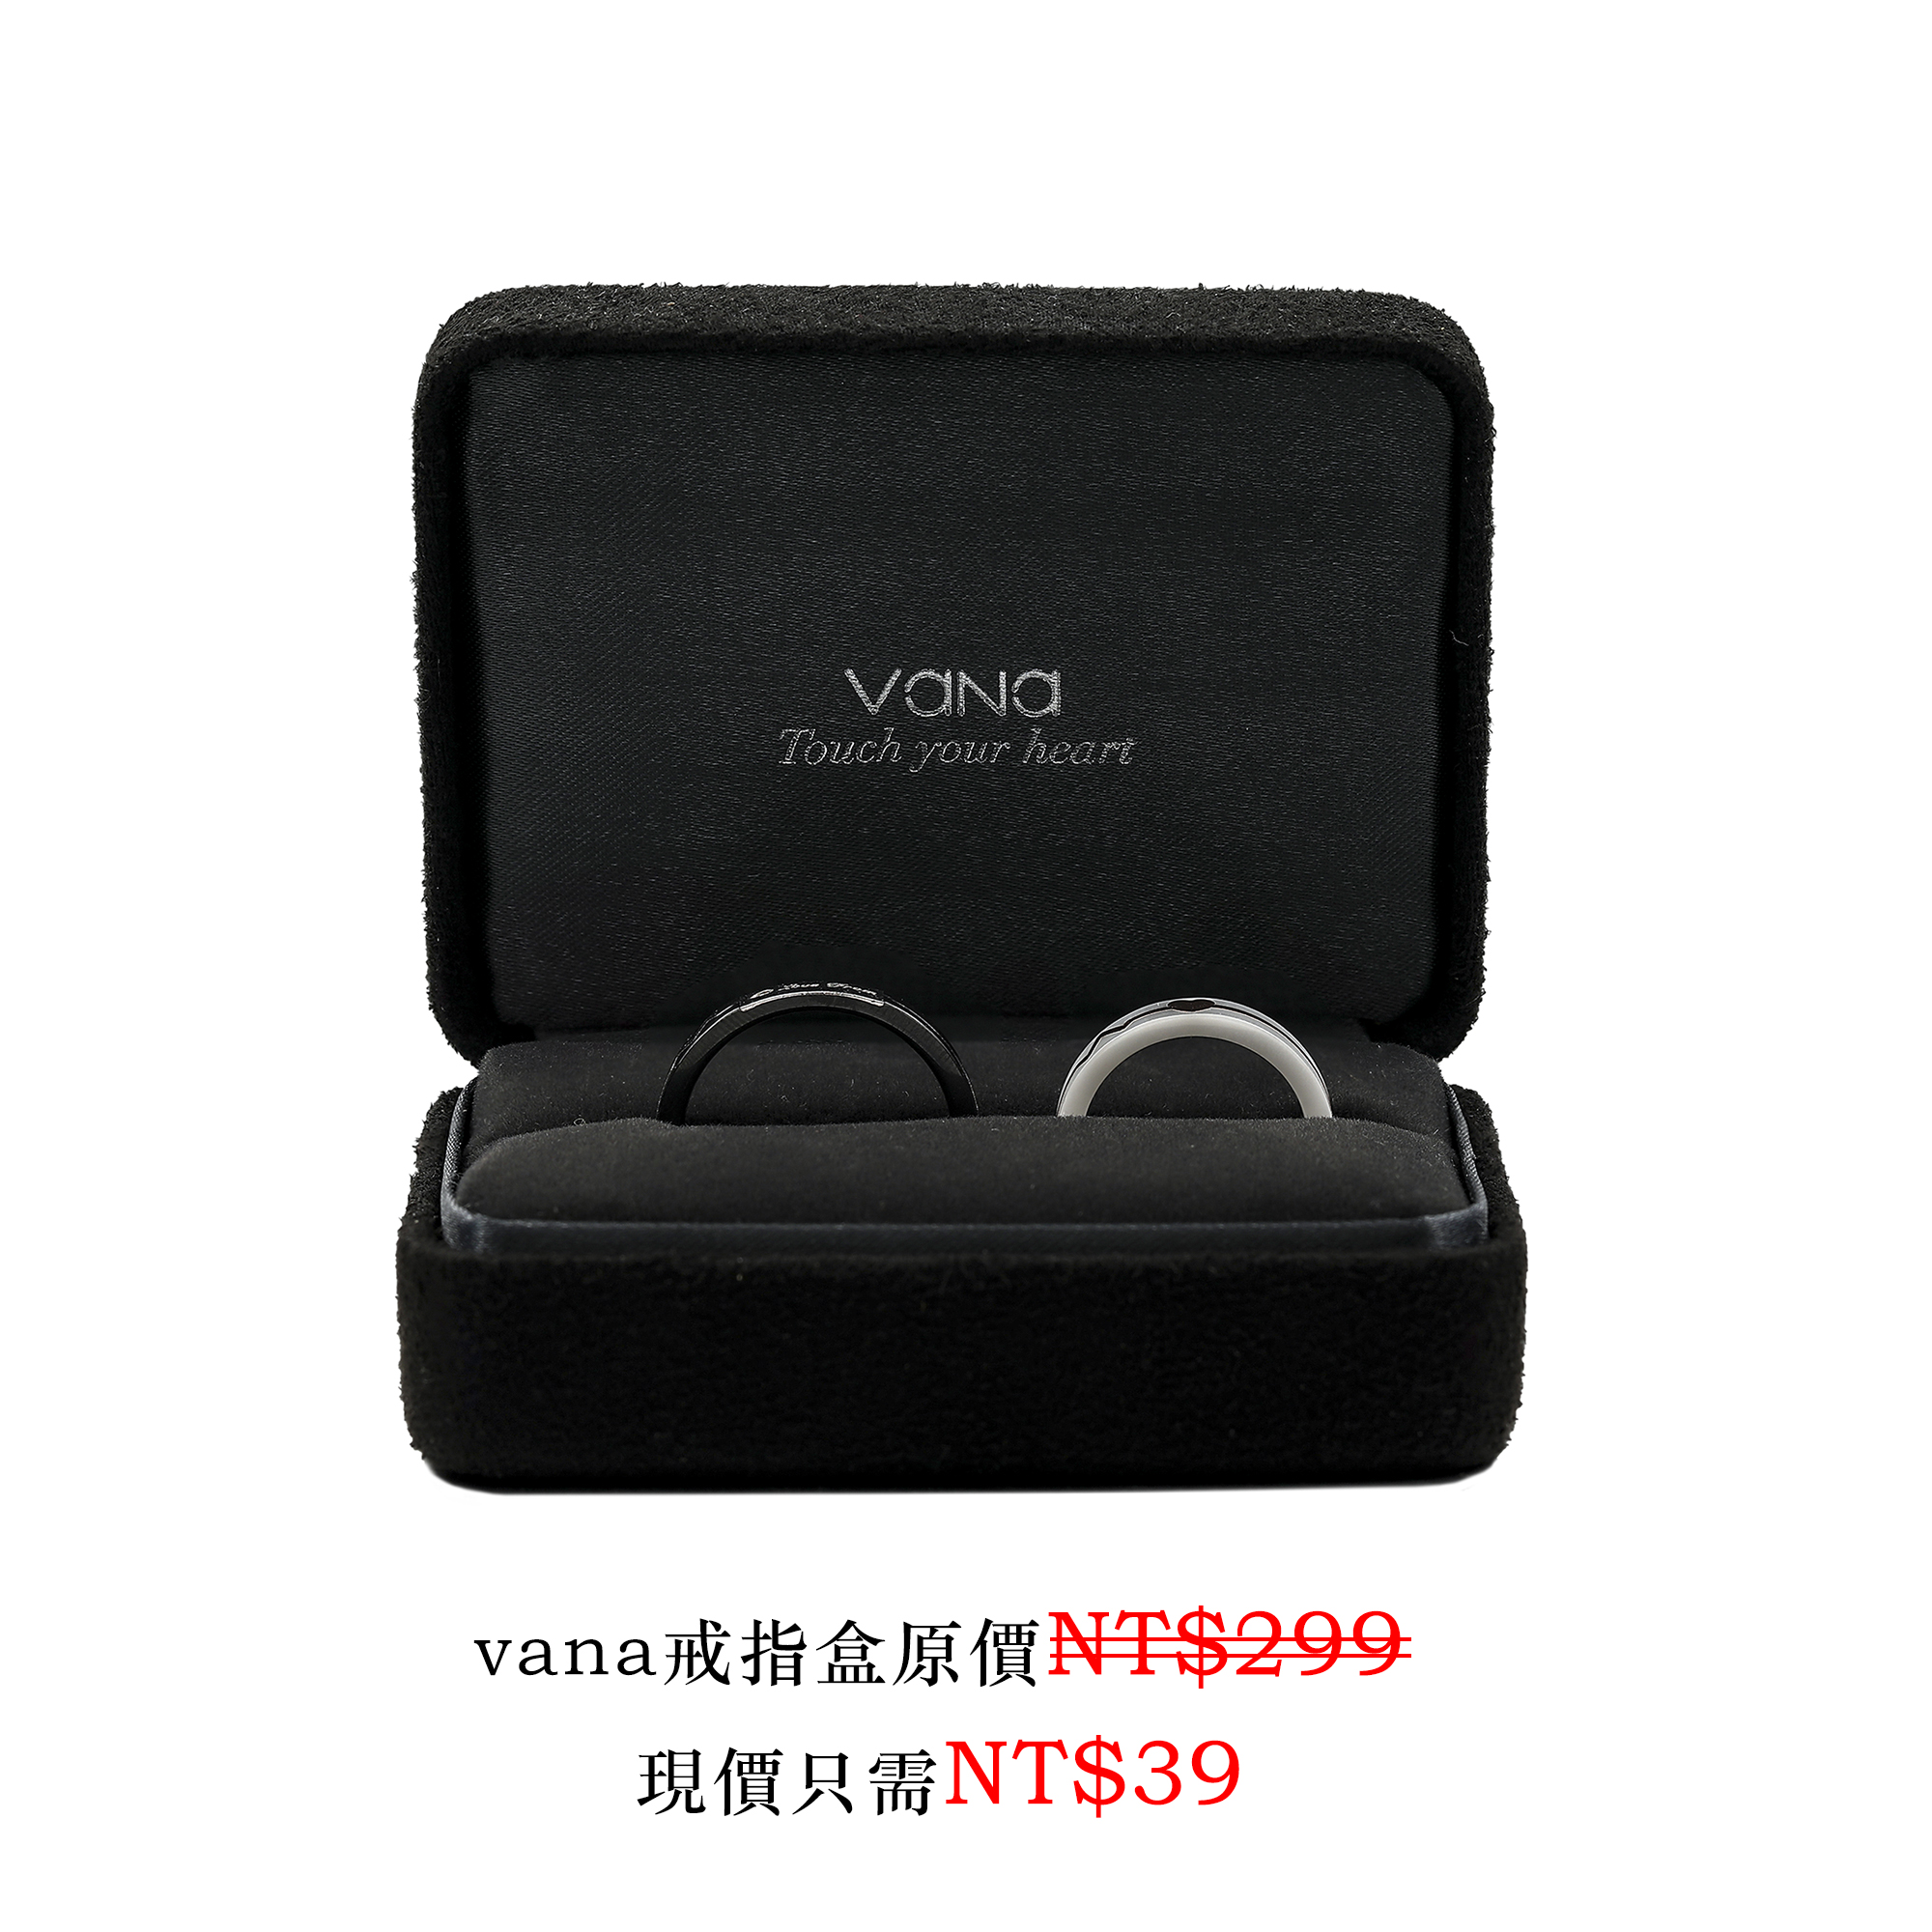 vana戒指盒原價NT$299現價只需NT$39-VANA氛圍飾品